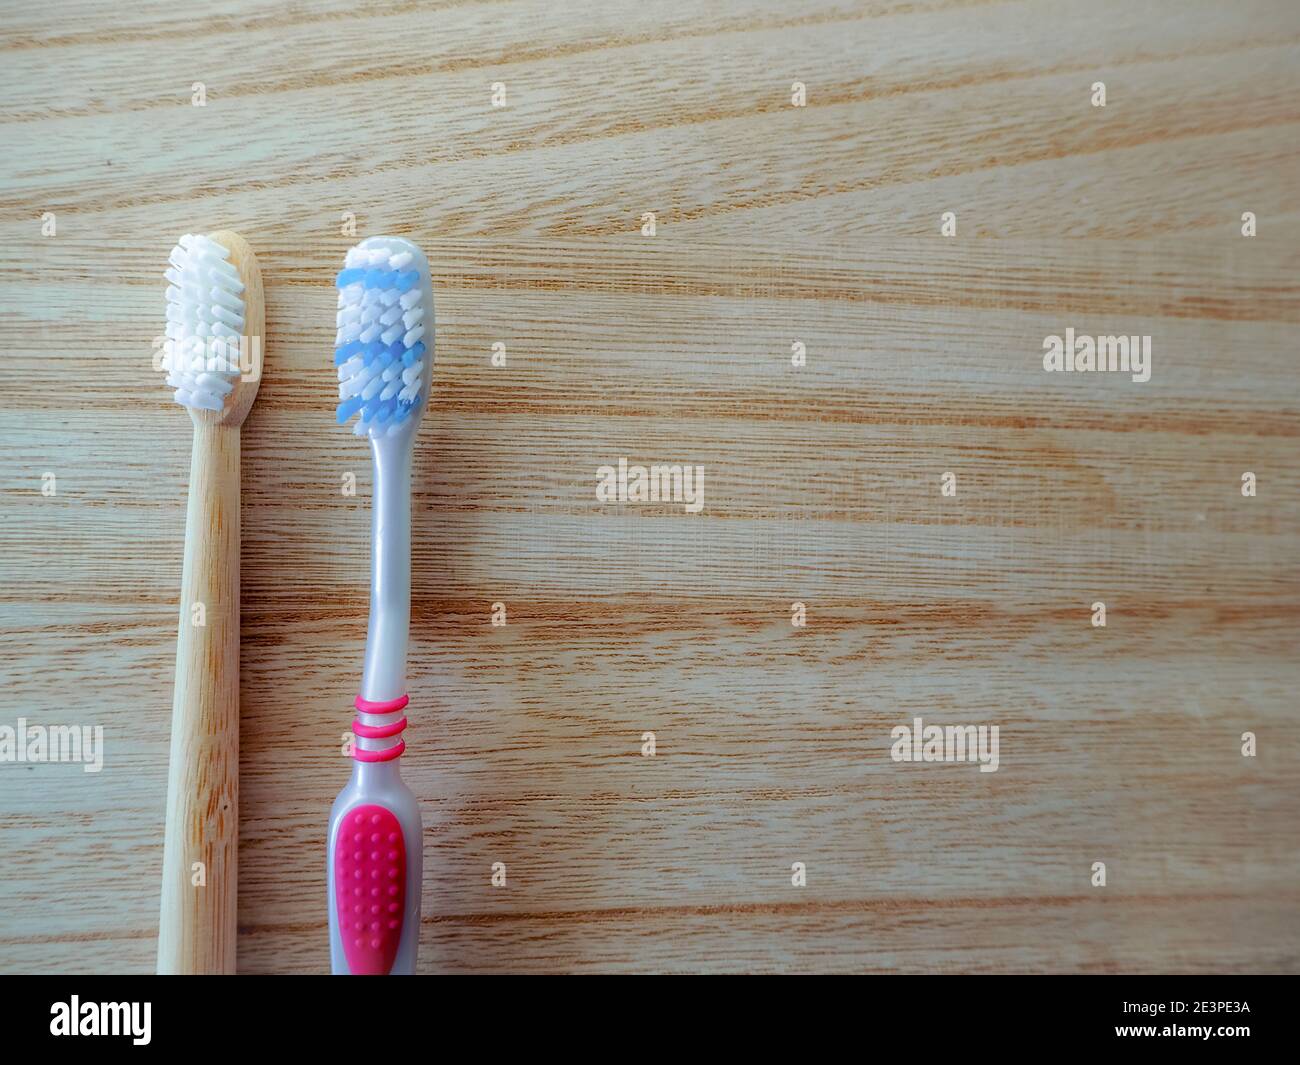 Concept de remplacement de style de vie sans plastique avec brosse à dents en plastique et brosse à dents en bambou comme alternative durable sur fond de bois. Banque D'Images